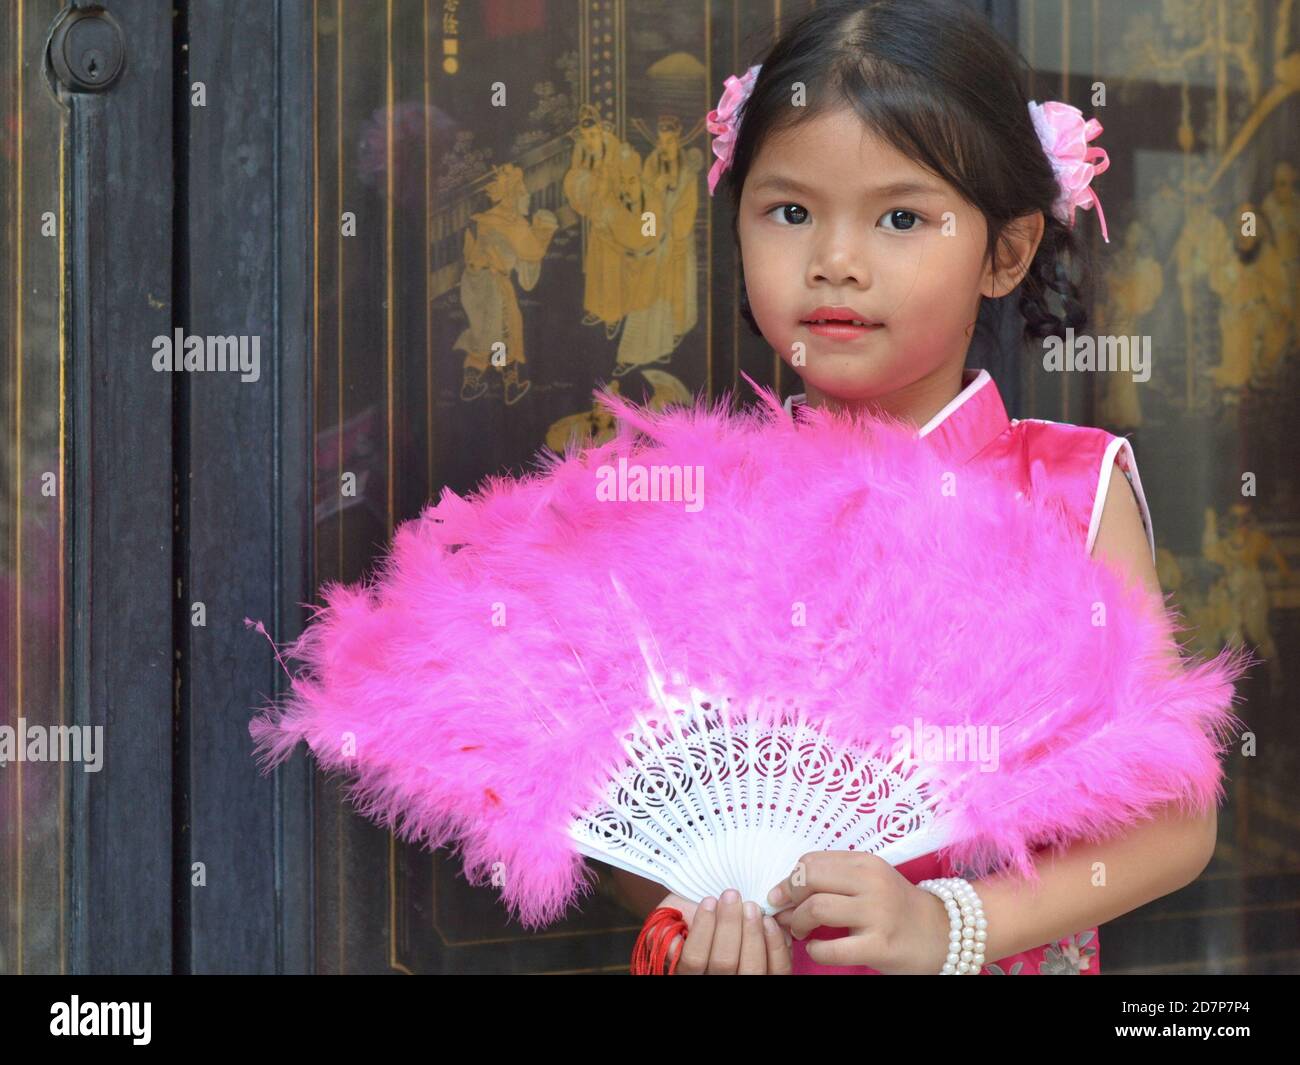 Vestita carina ragazza cinese tailandese pose con un fan di piume rosa tenuto a mano, durante il Capodanno cinese, all'interno del Tempio del Drago Lotus. Foto Stock